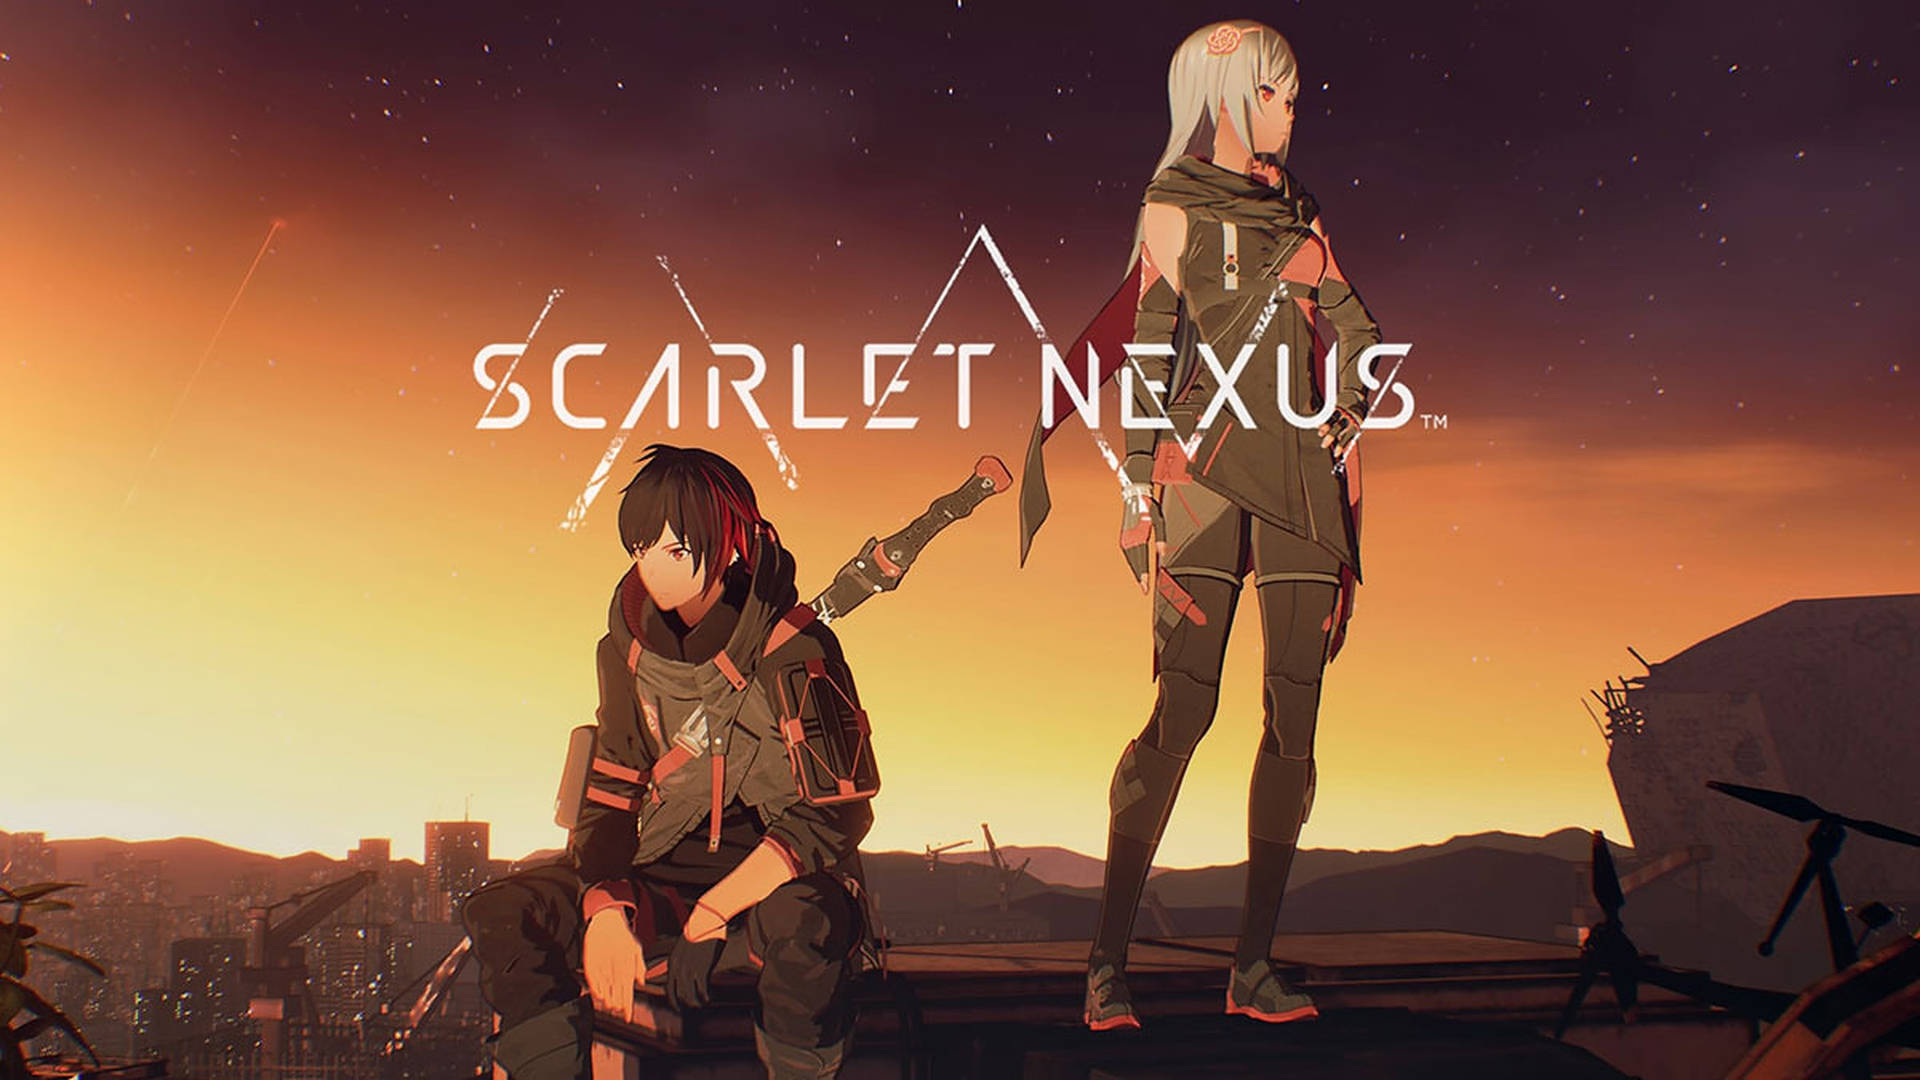 Nexus Background Wallpaper